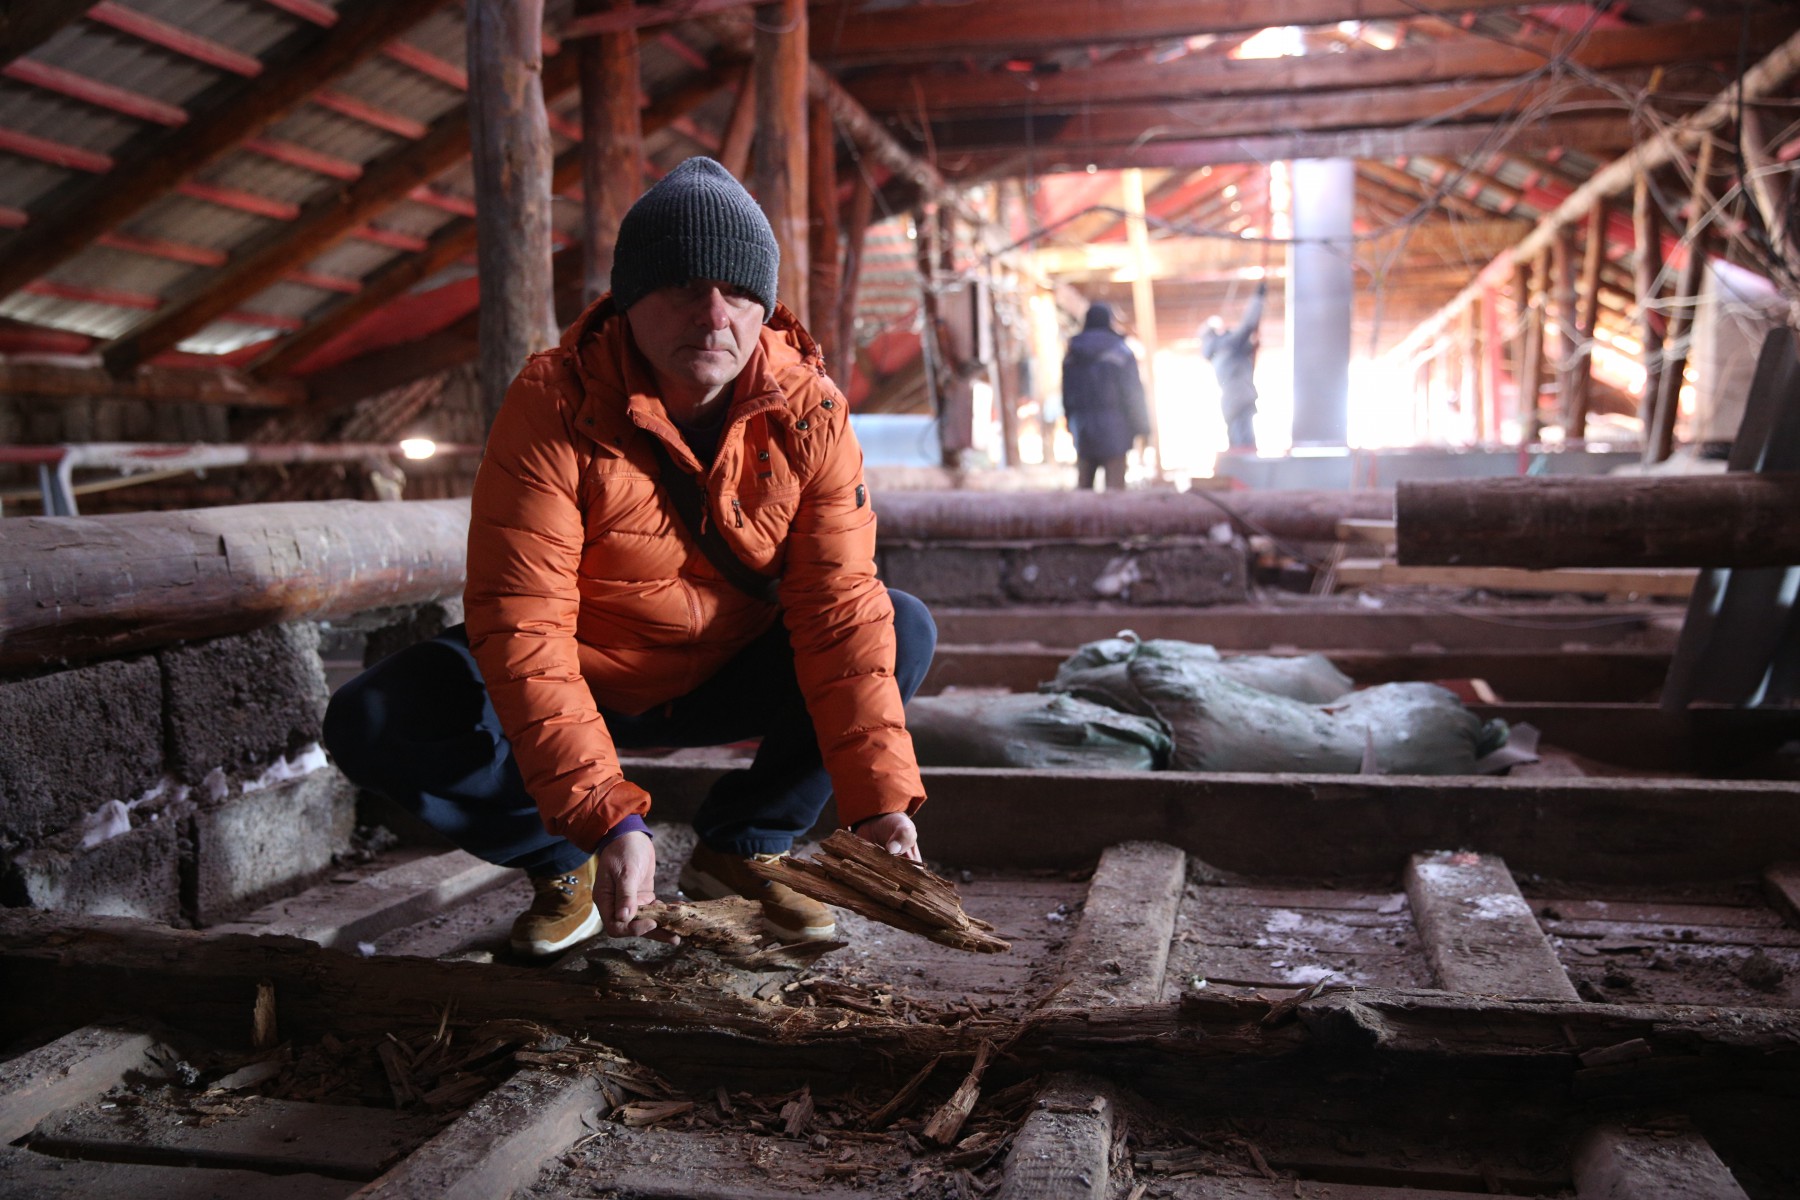 Дмитрий Заколюкин показывает, что балки чердака сгнили из-за постоянной влаги. Фото Владимира Коцюбы-Белых